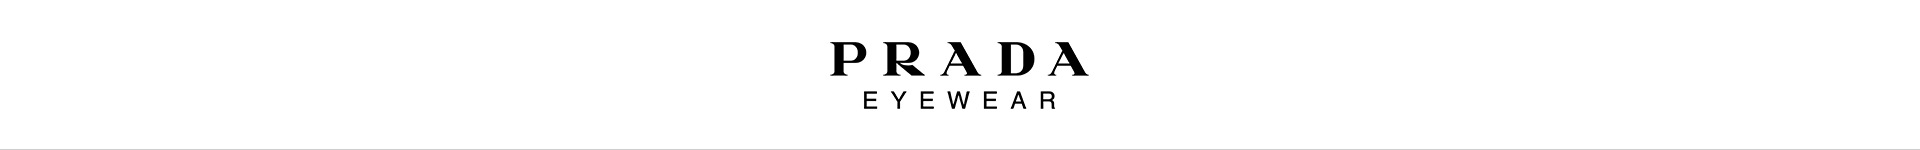 Prada® Eyeglasses | FramesDirect.com